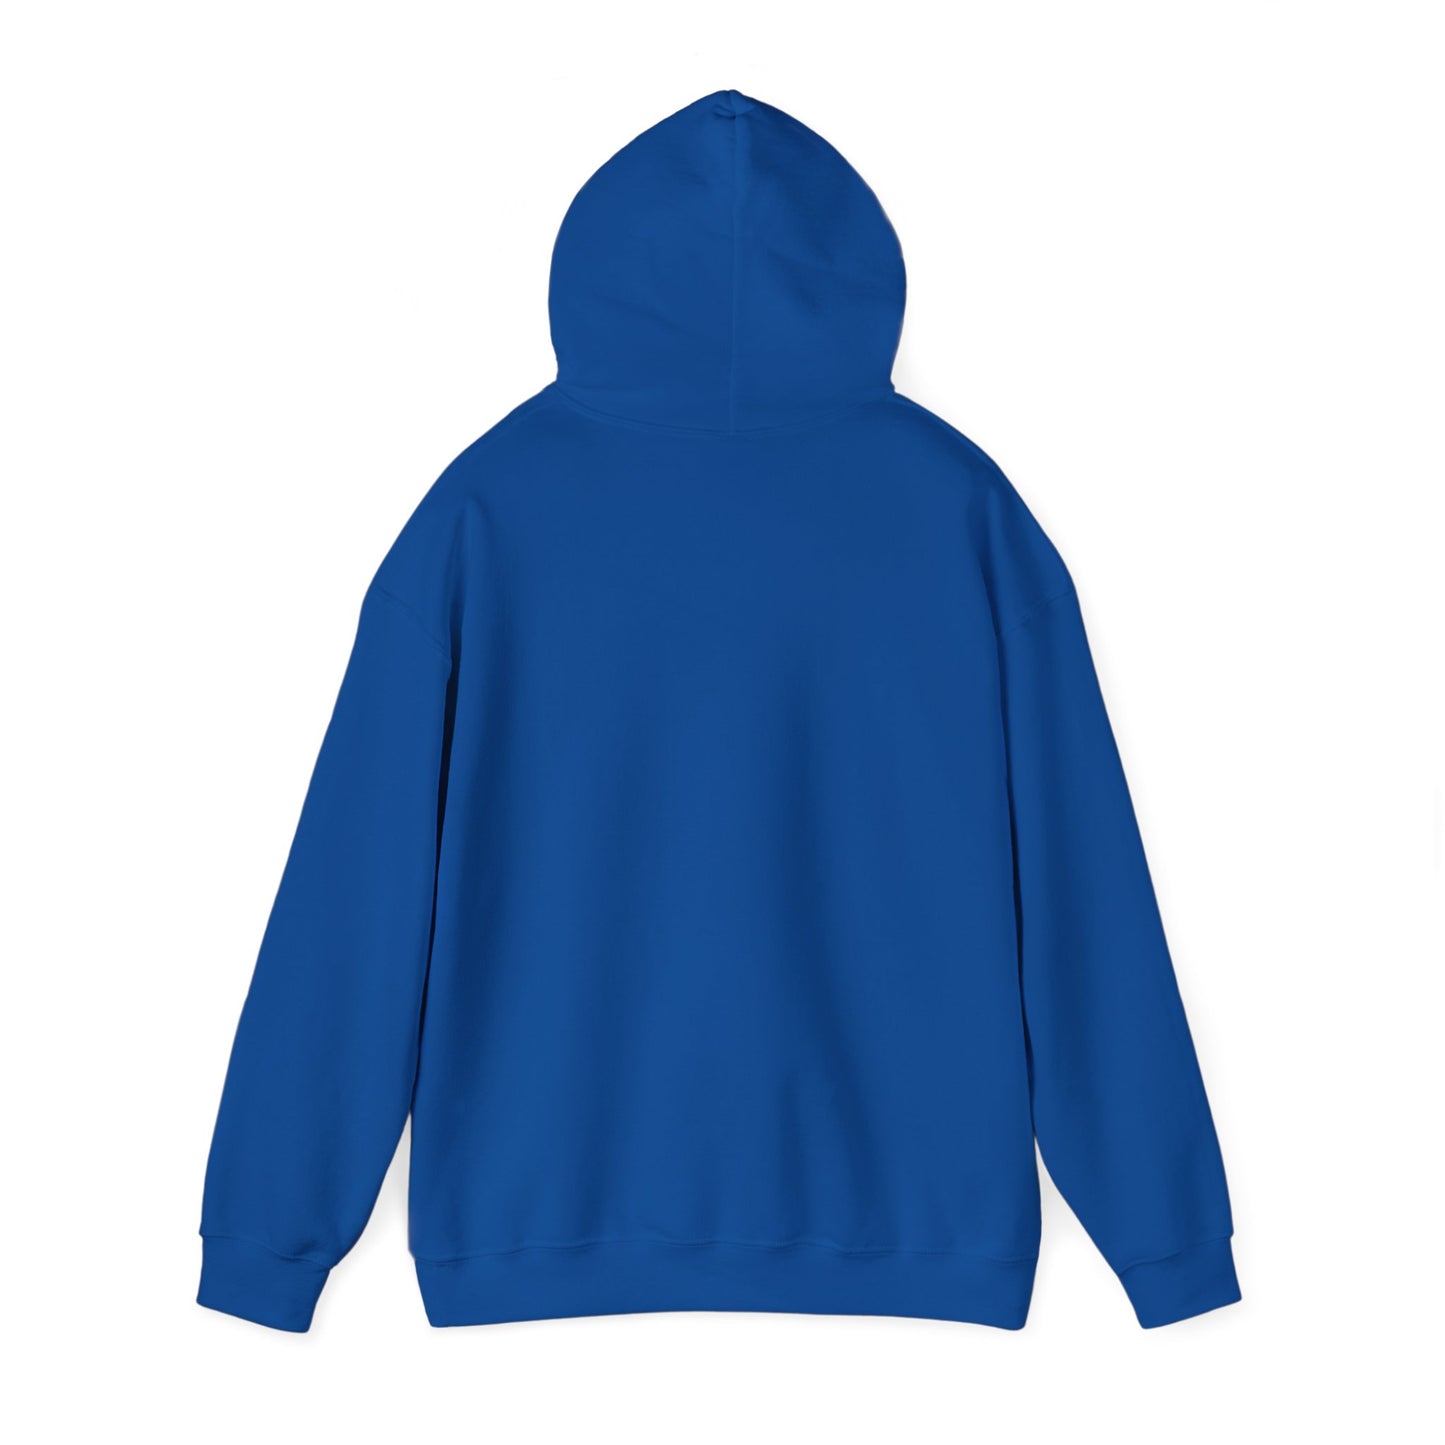 No Rock Like God Unisex Heavy Blend™ Hooded Sweatshirt